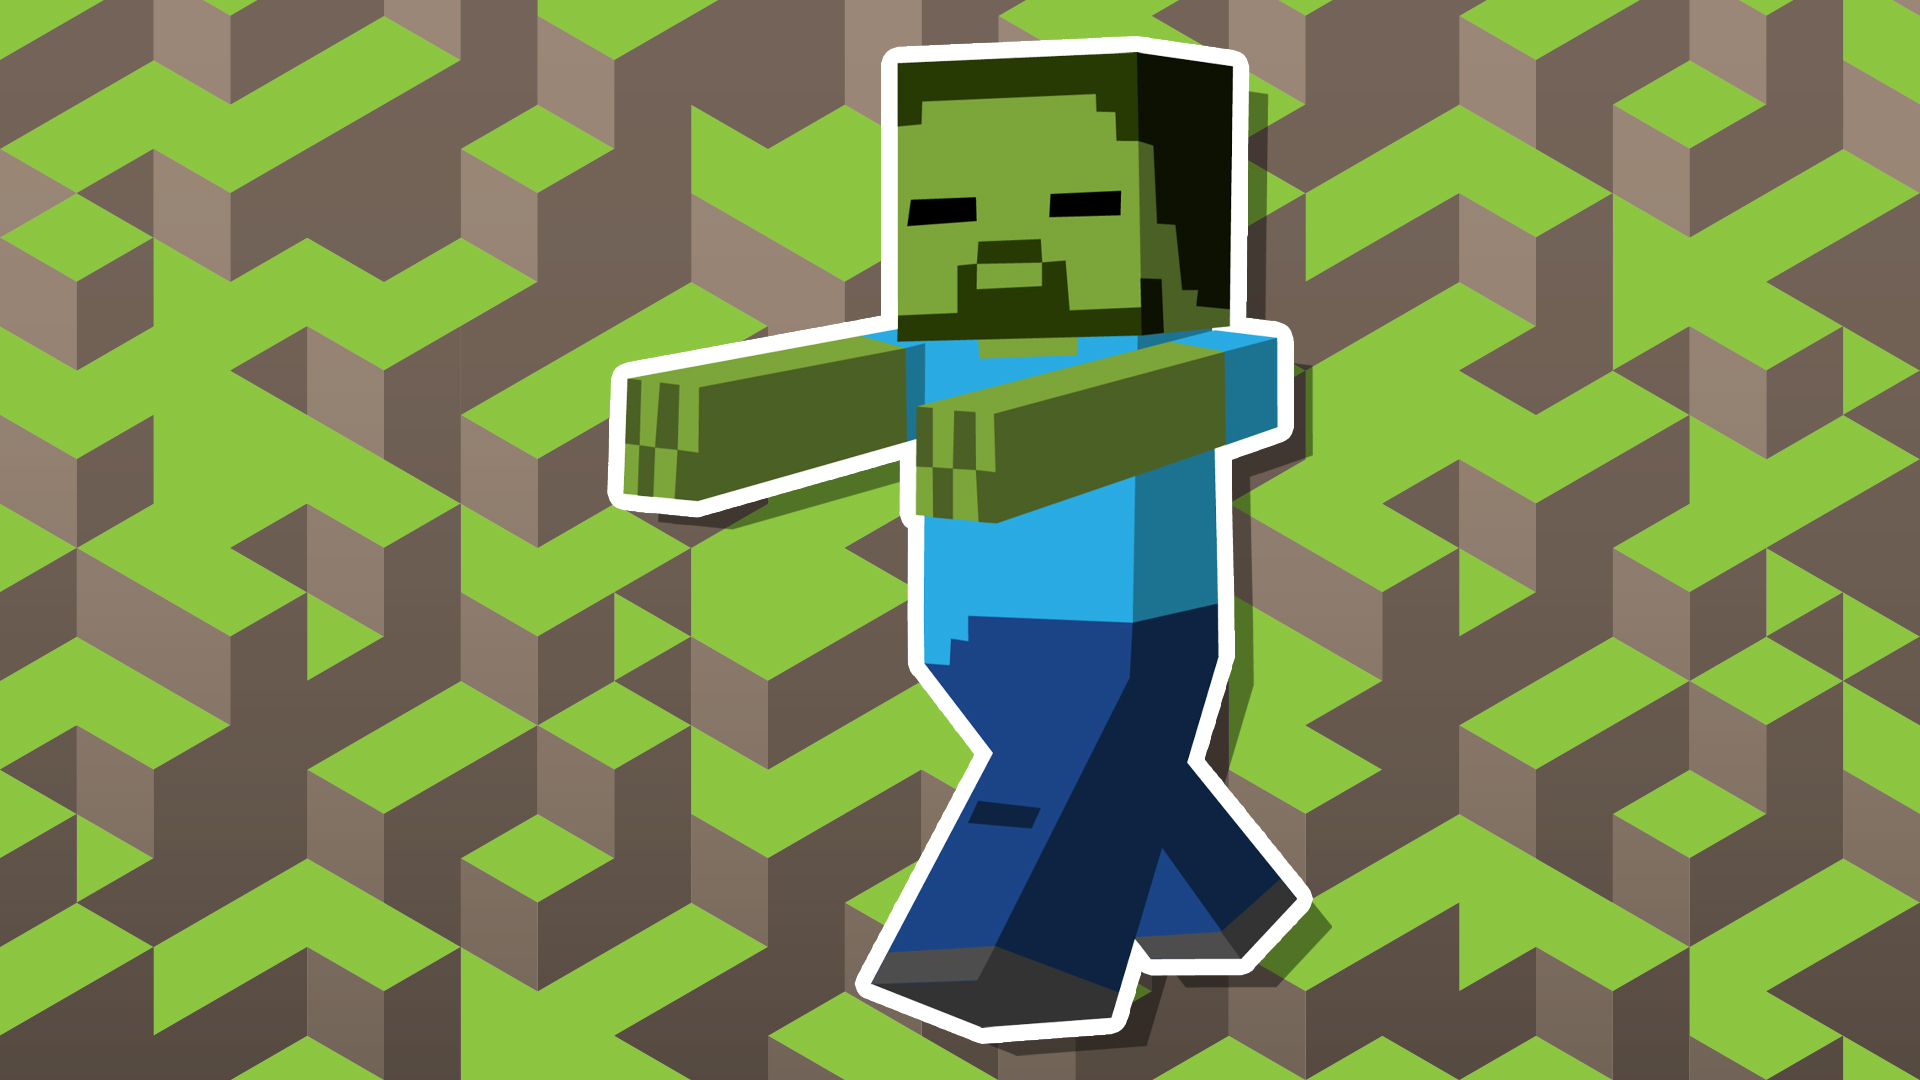 A Minecraft zombie